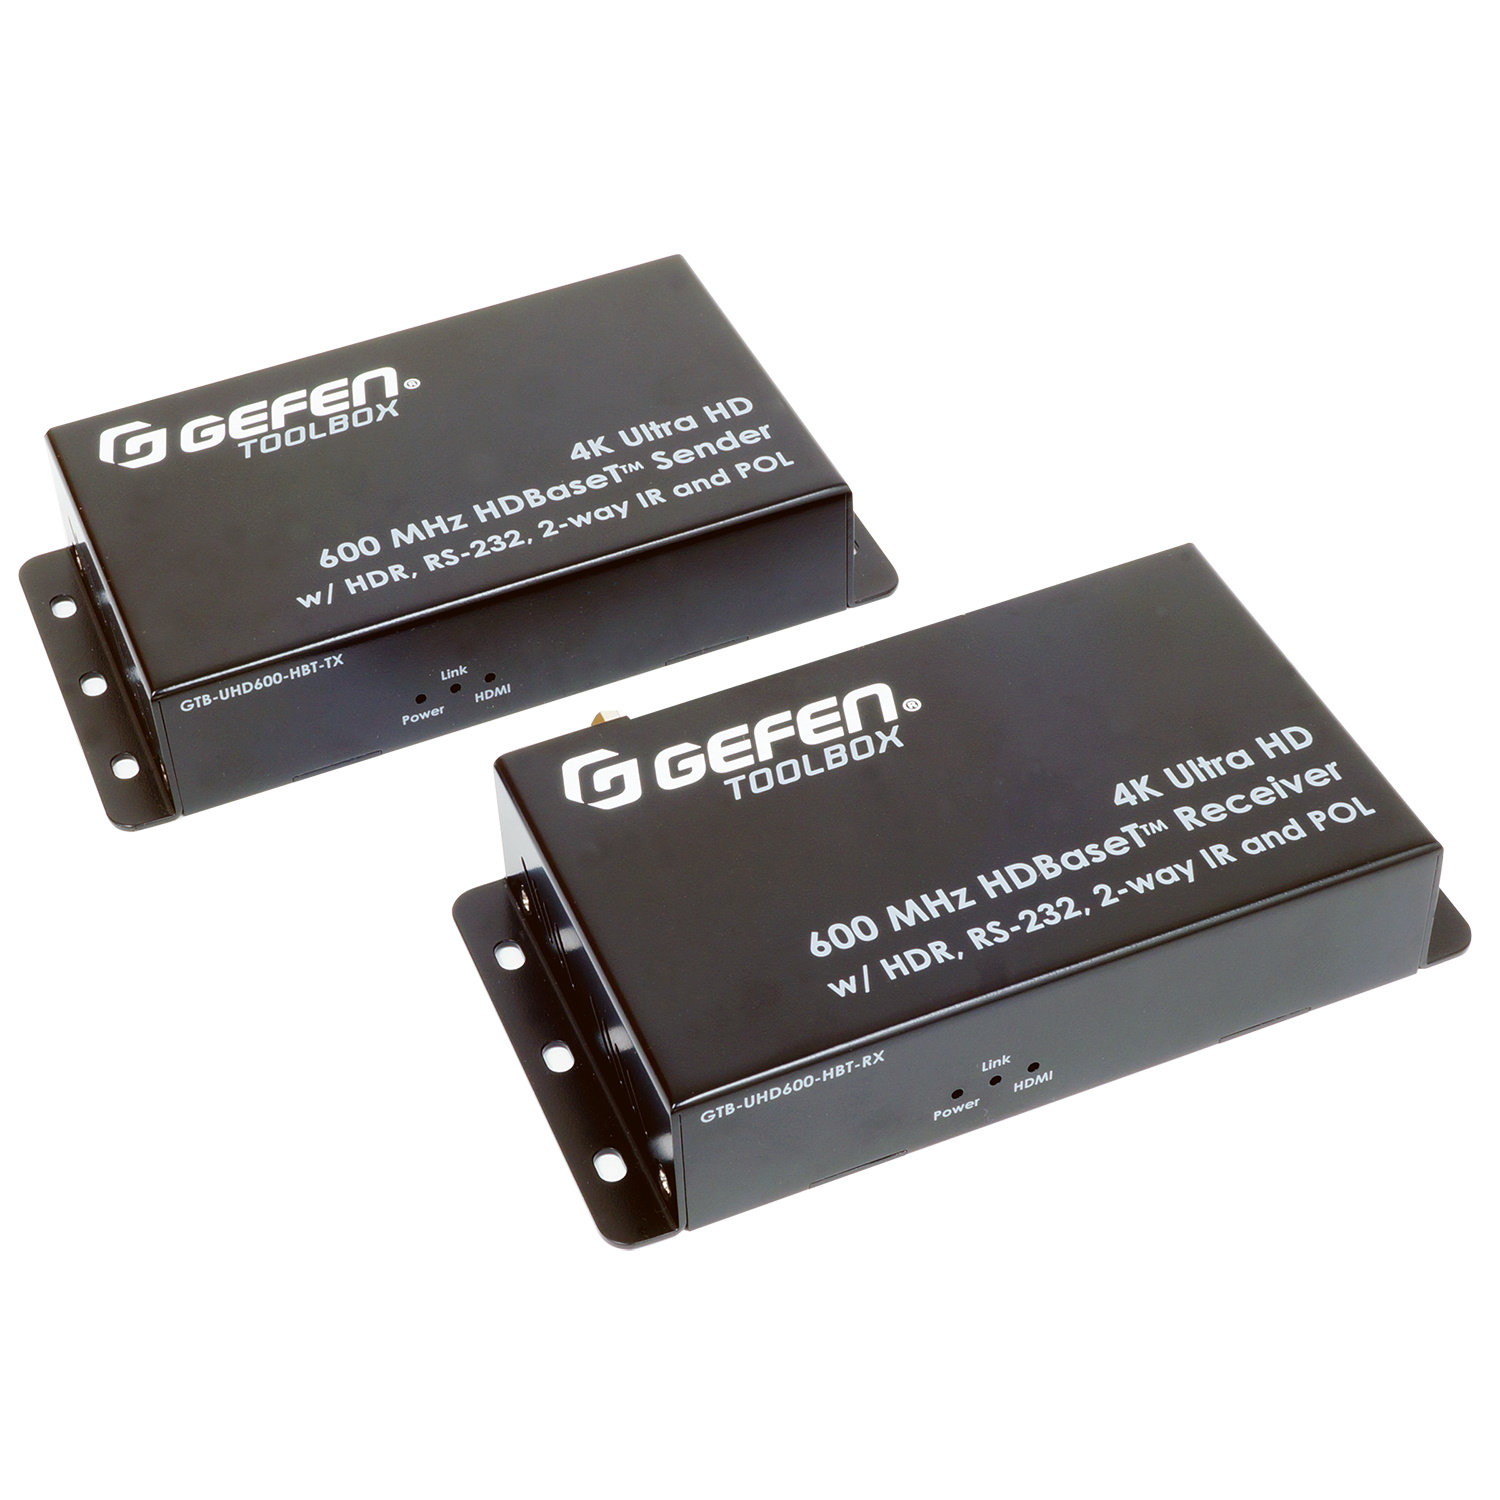 HDMI коммутаторы, разветвители, повторители Gefen GTB-UHD600-HBT hdmi коммутаторы разветвители повторители dr hd дополнительный приемник для dr hd ex 100 lir